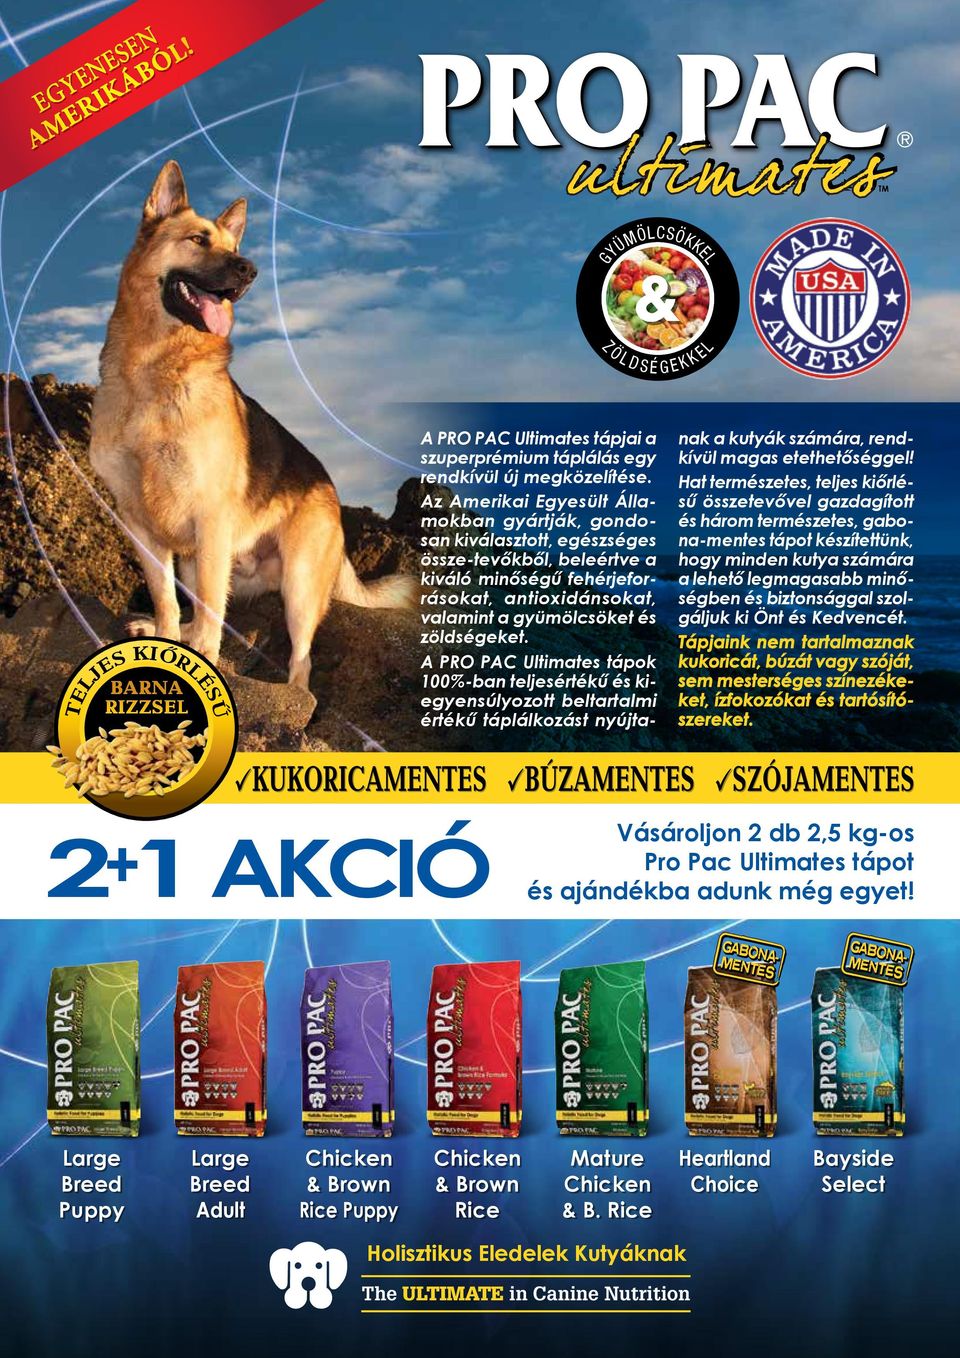 A PRO PAC Ultimates tápok 100%-ban teljesértékű és kiegyensúlyozott beltartalmi értékű táplálkozást nyújtanak a kutyák számára, rendkívül magas etethetőséggel!